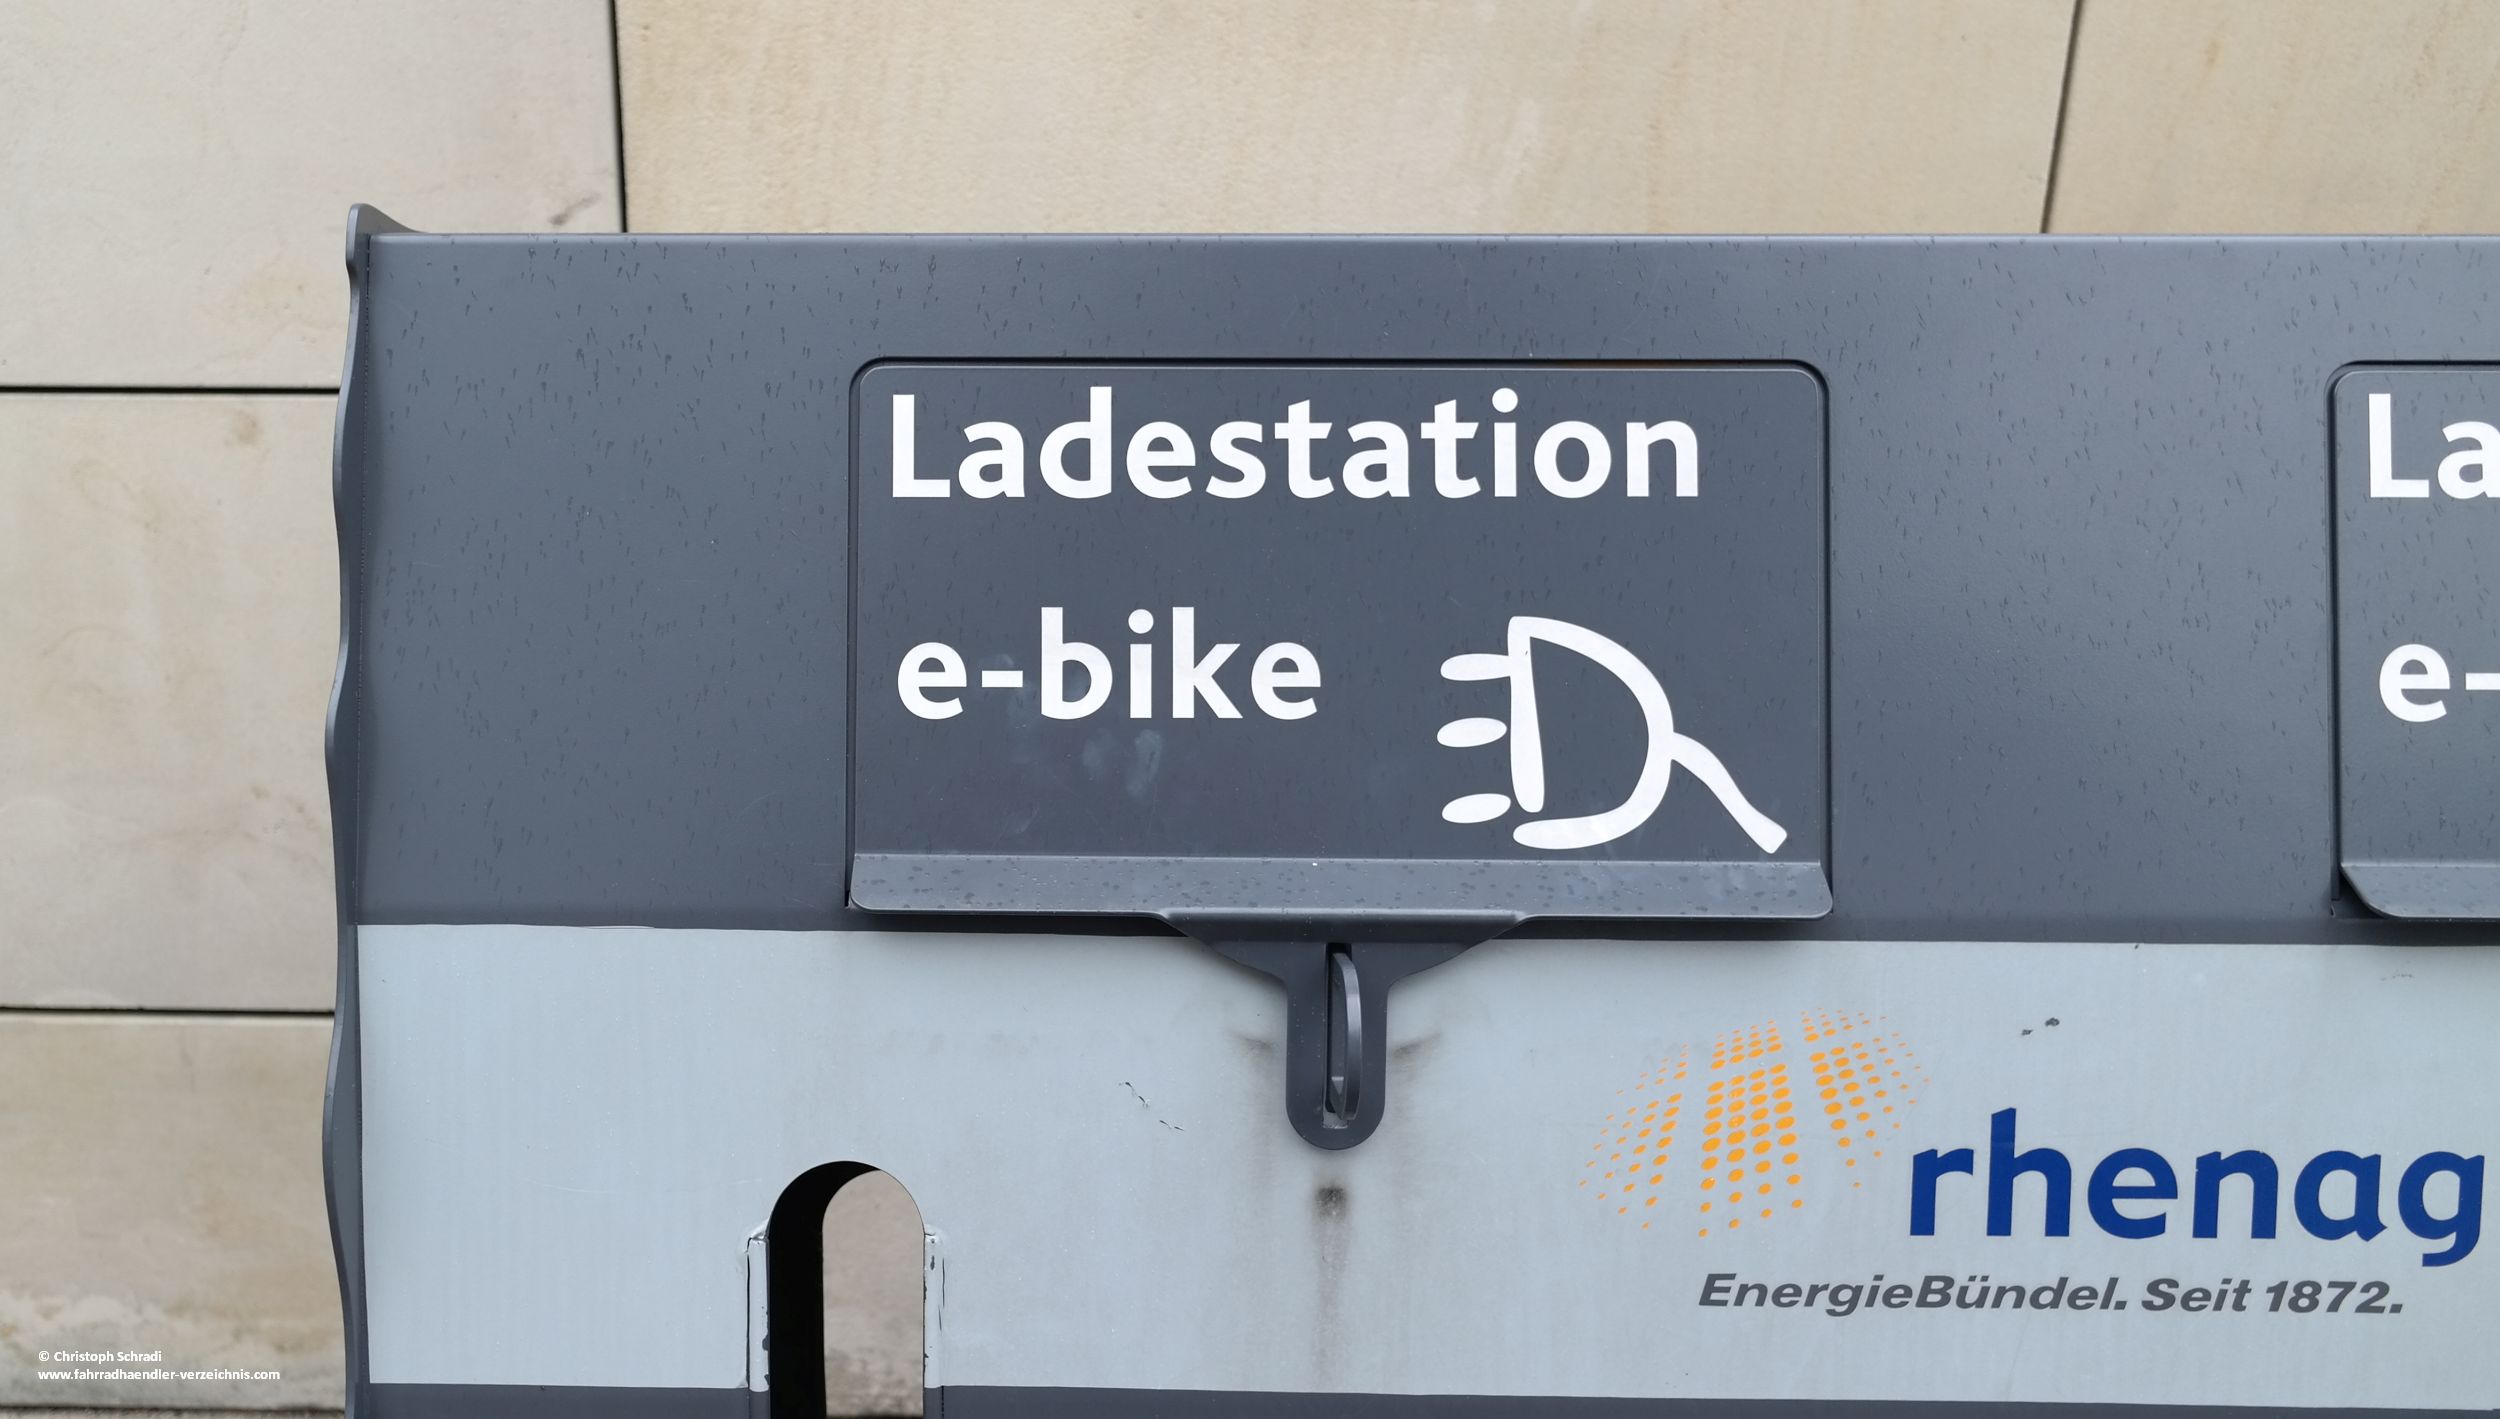 E-Bike Ladestationen sind wie auch im Grunde E-Bikes bisher eher noch die Ausnahme als die Regel - auch wenn der Medienrummel gerne etwas anderes glauben machen möchte